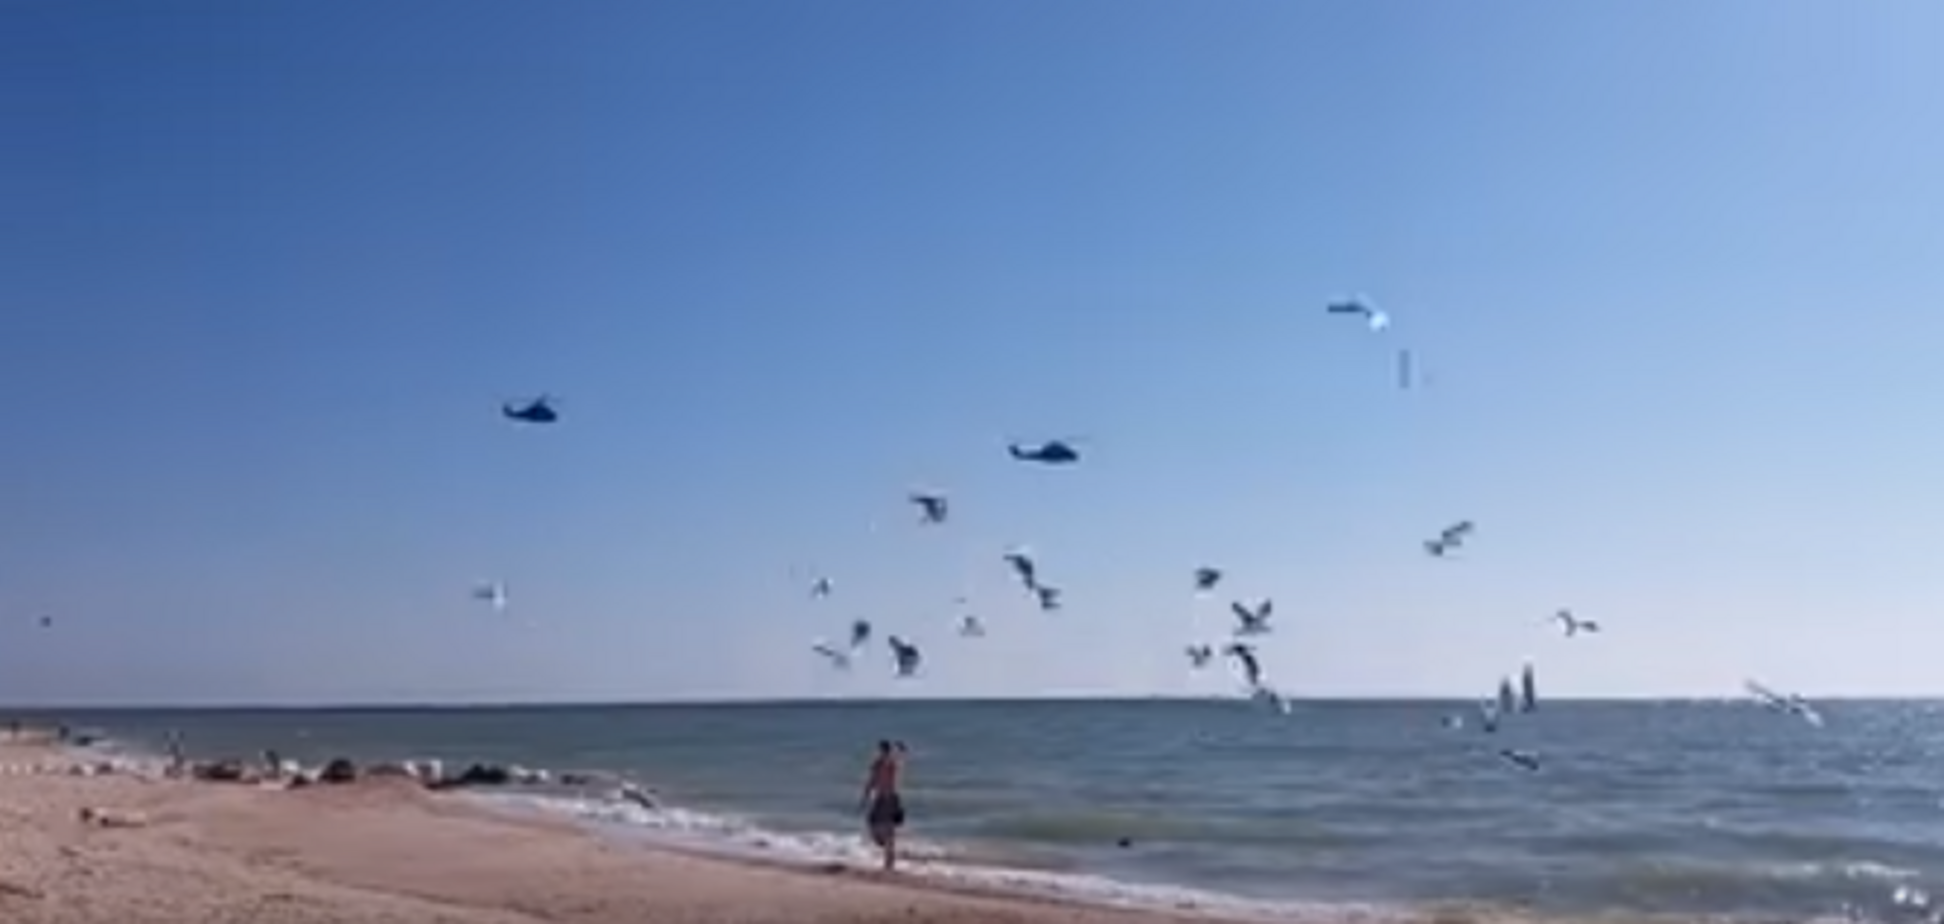 З'явилося відео з військовою авіацією над популярним курортом в Україні